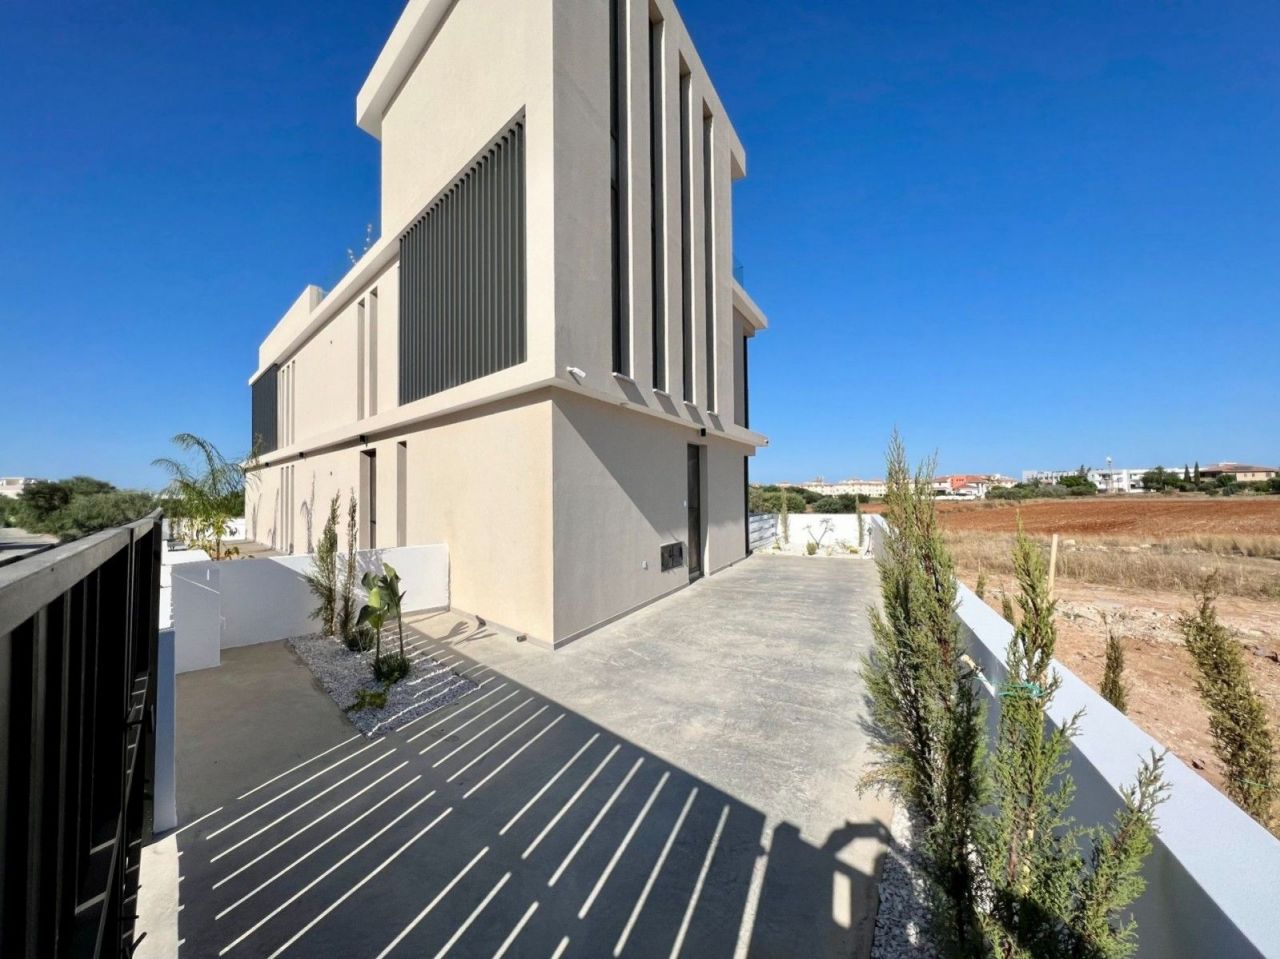 Апартаменты в Протарасе, Кипр, 86 м2 - фото 1